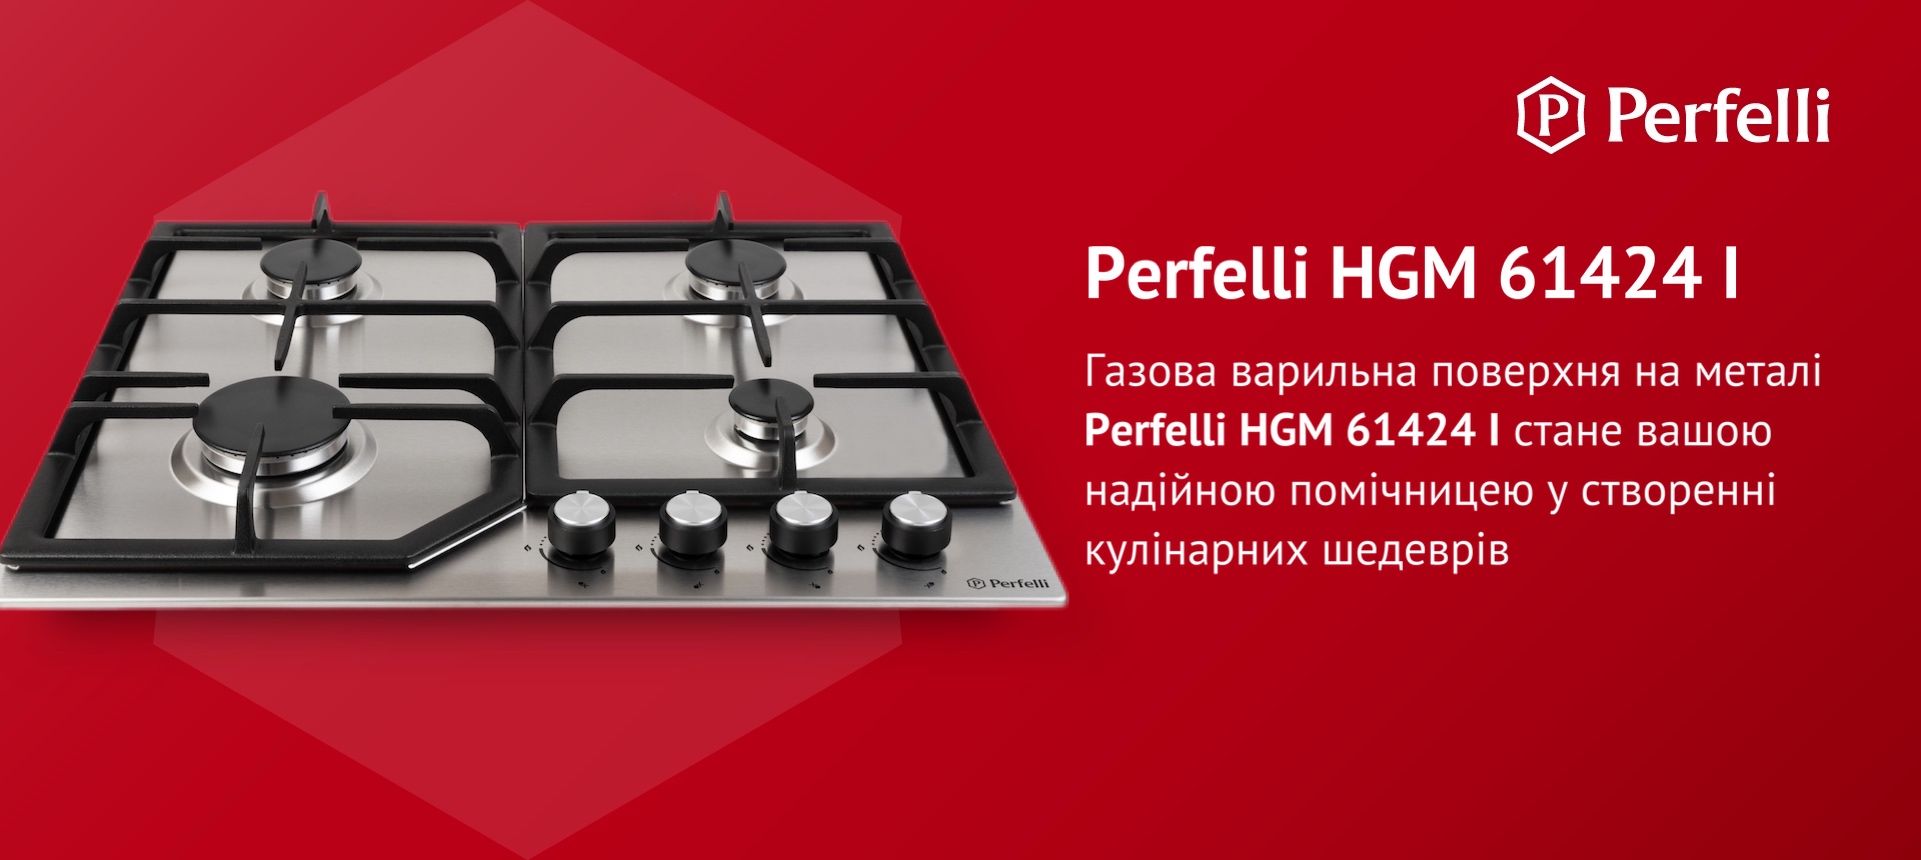 Газова варильна поверхня на металі Perfelli HGM 61424 I стане вашою надійною помічницею у створенні кулінарних шедеврів